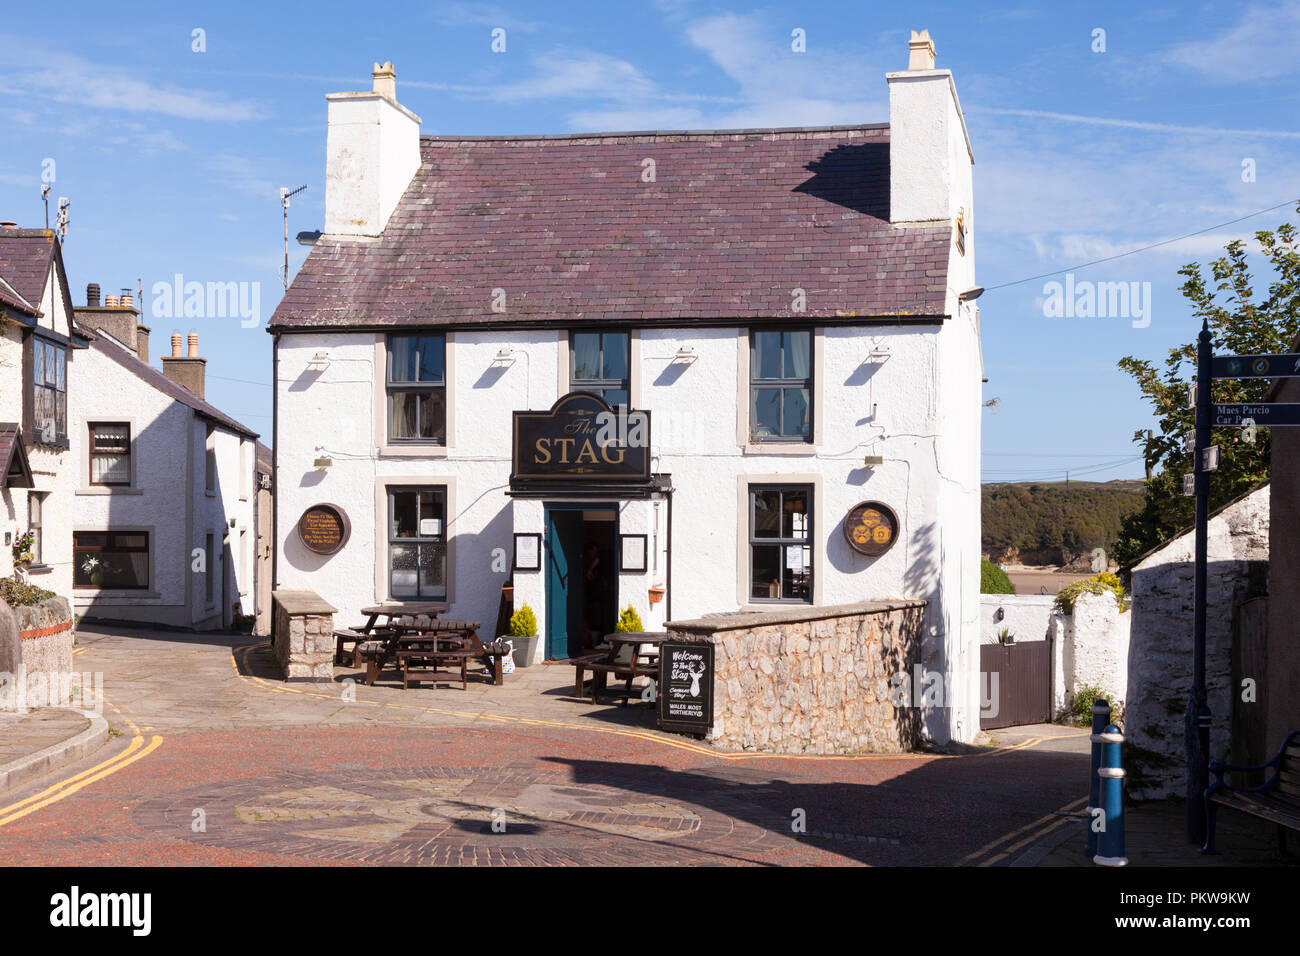 Le pub Stag ou inn, Camaes au Pays de Galles, Royaume-Uni Banque D'Images